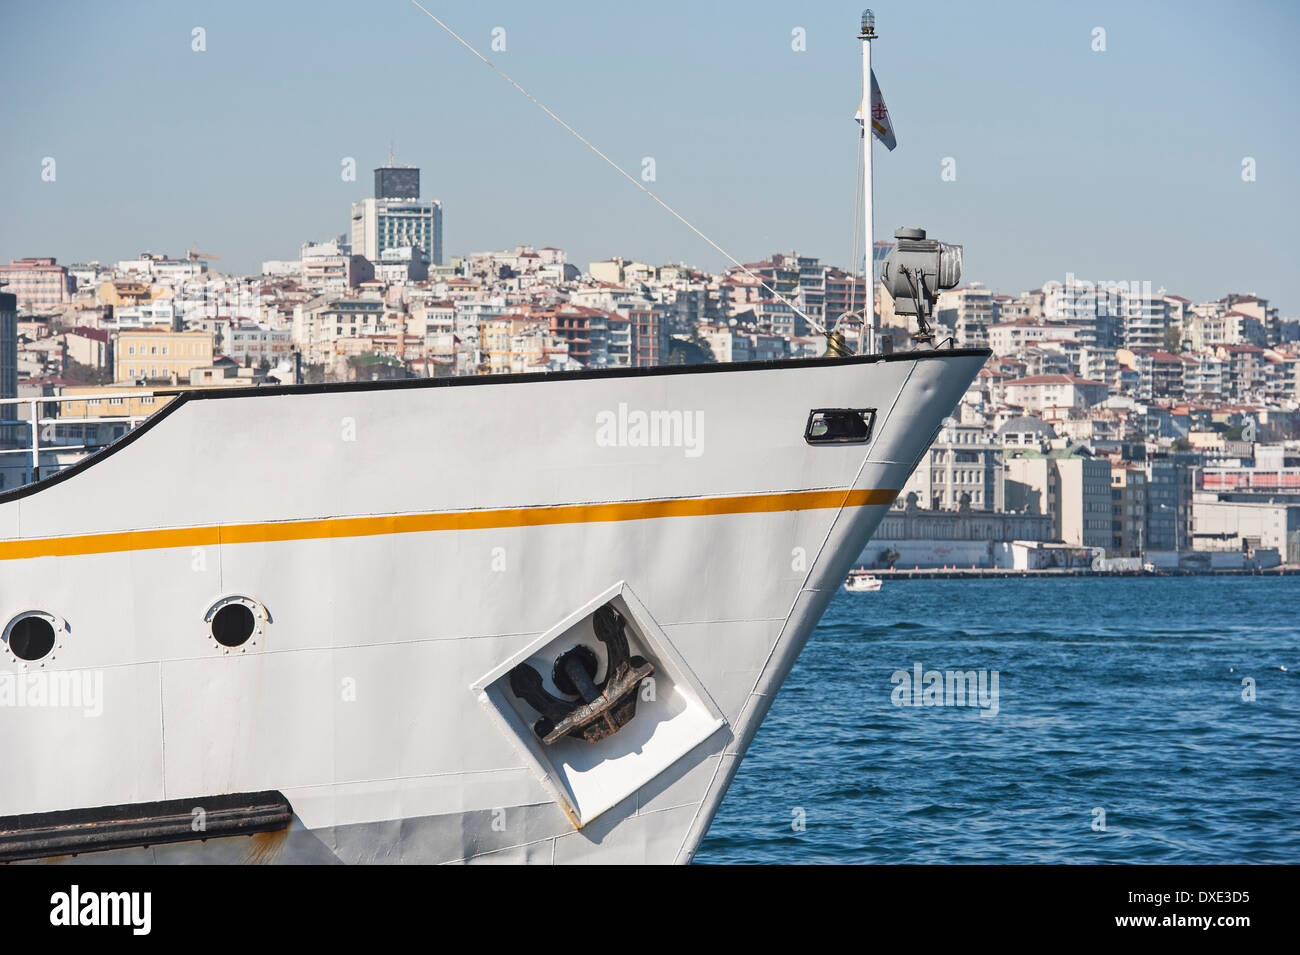 Proa de un buque en el puerto grande de metal contra el fondo del paisaje urbano Foto de stock